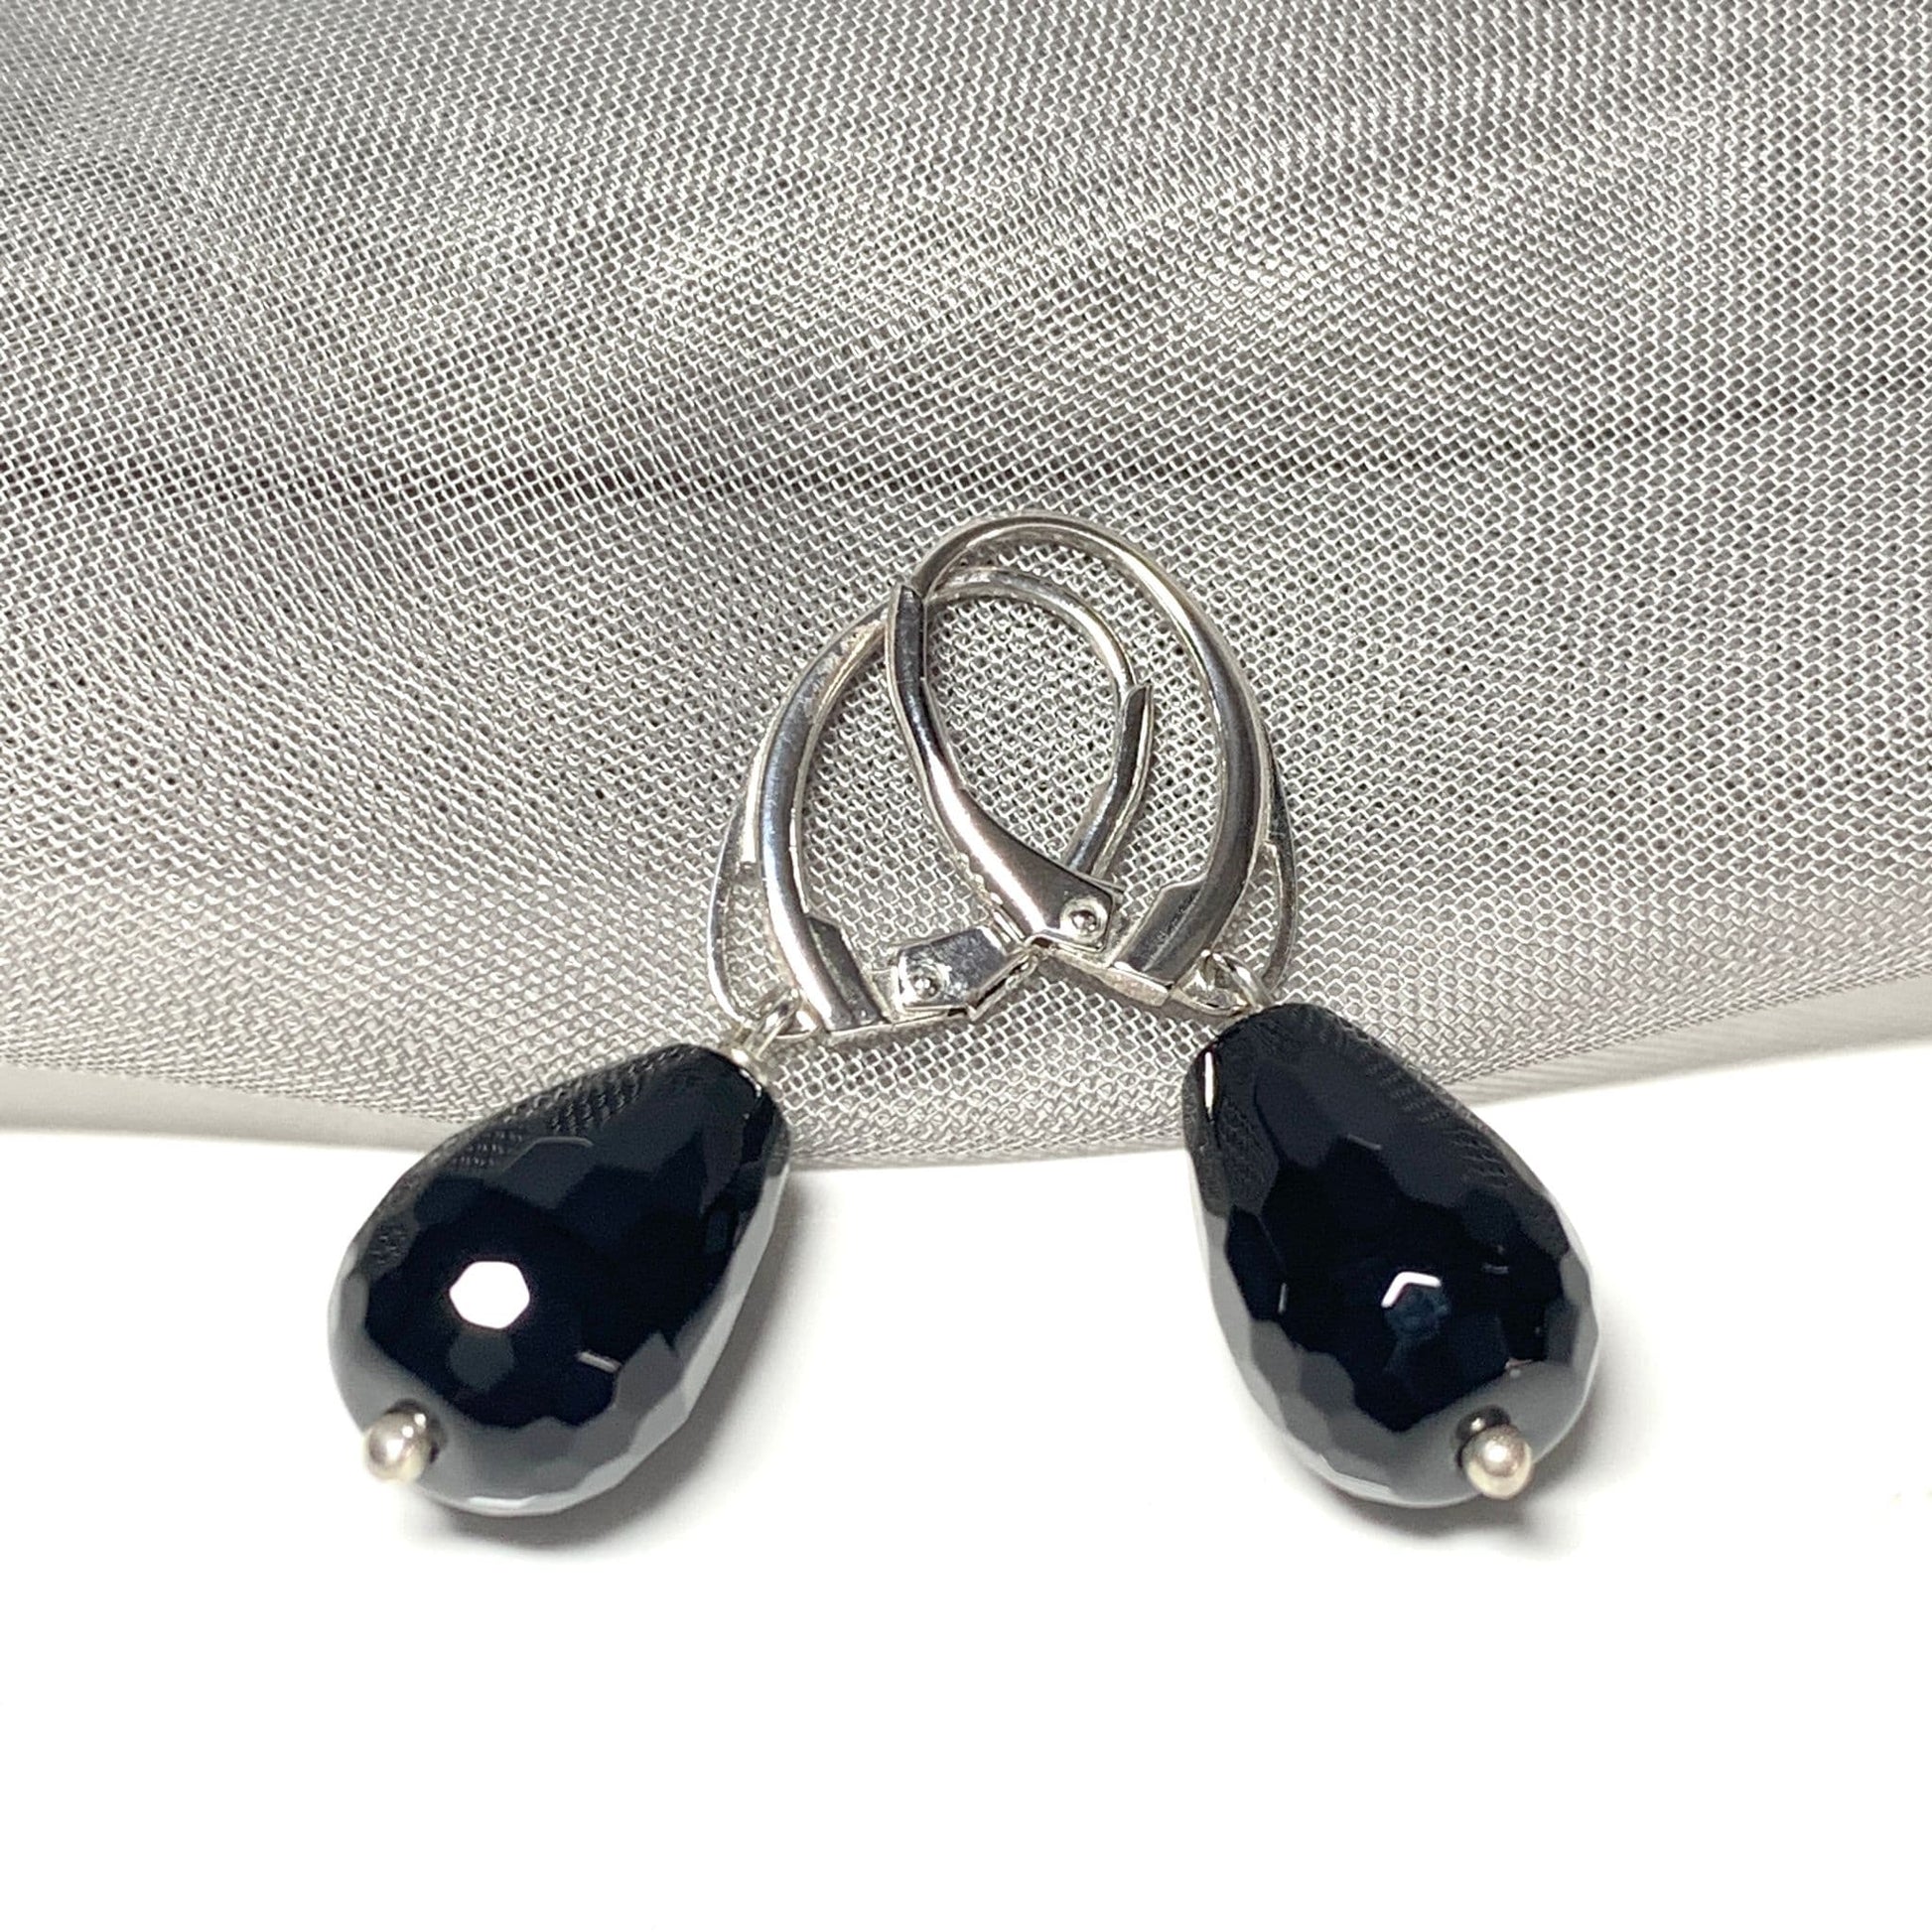 Medium Onyx Teardrop Shaped Sterling Silver Drop Earrings